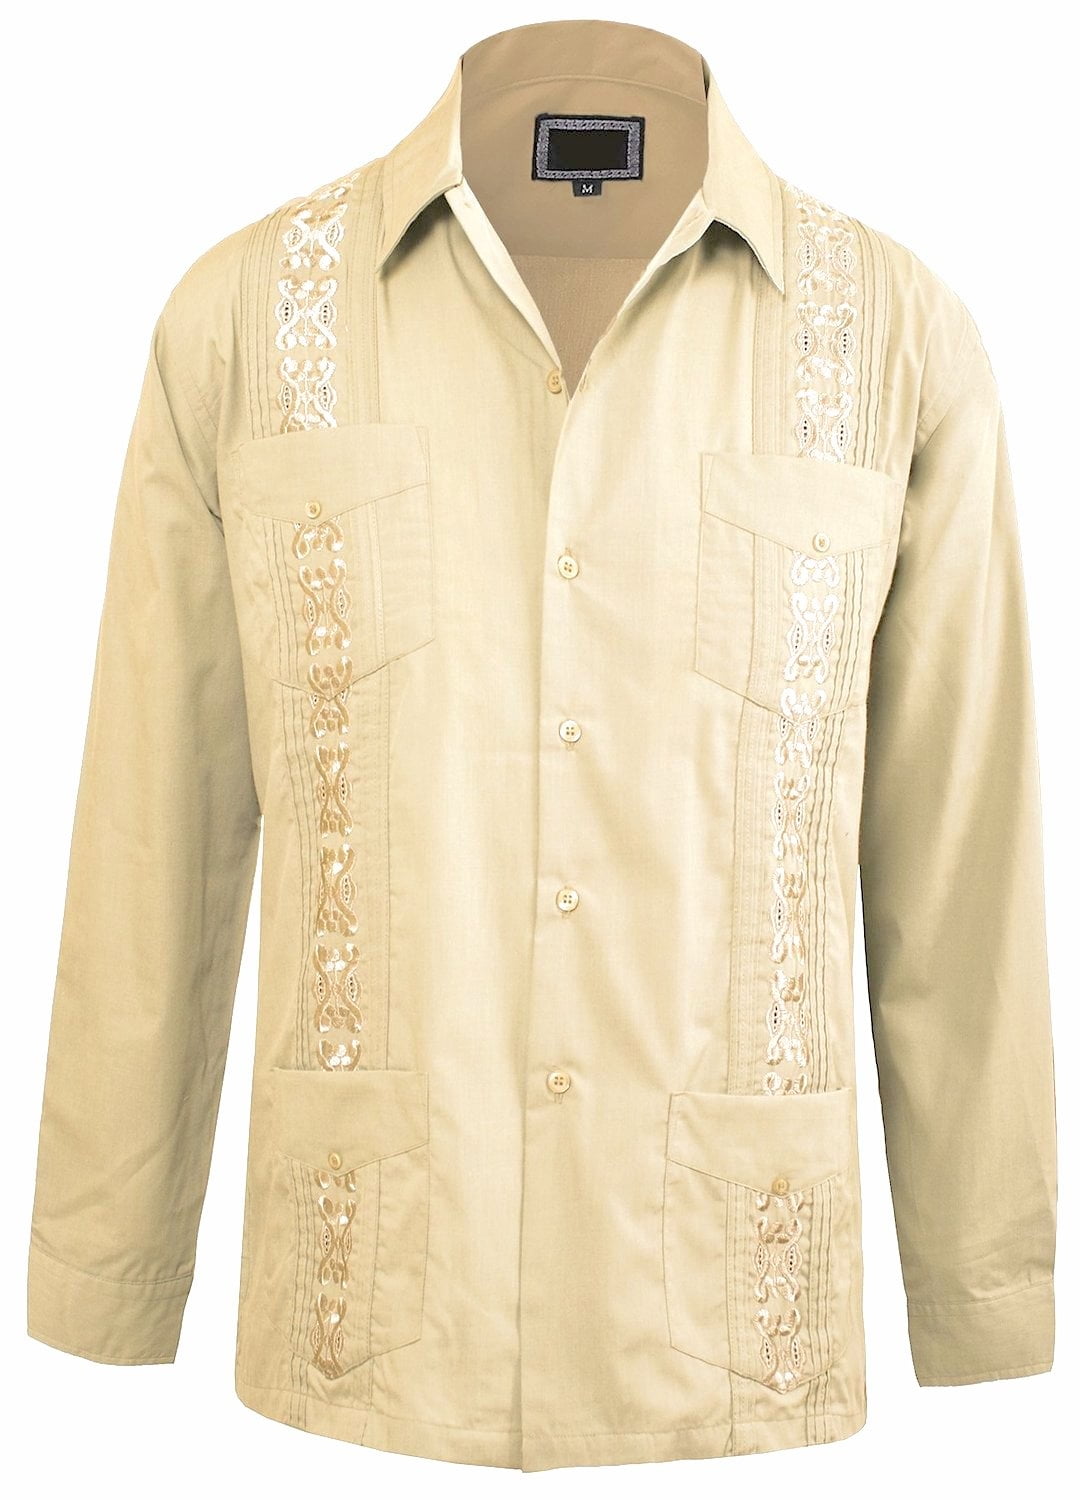 Guayabera Men's Cuban Beach Wedding Long Sleeve Button-up Shirt Beige ...